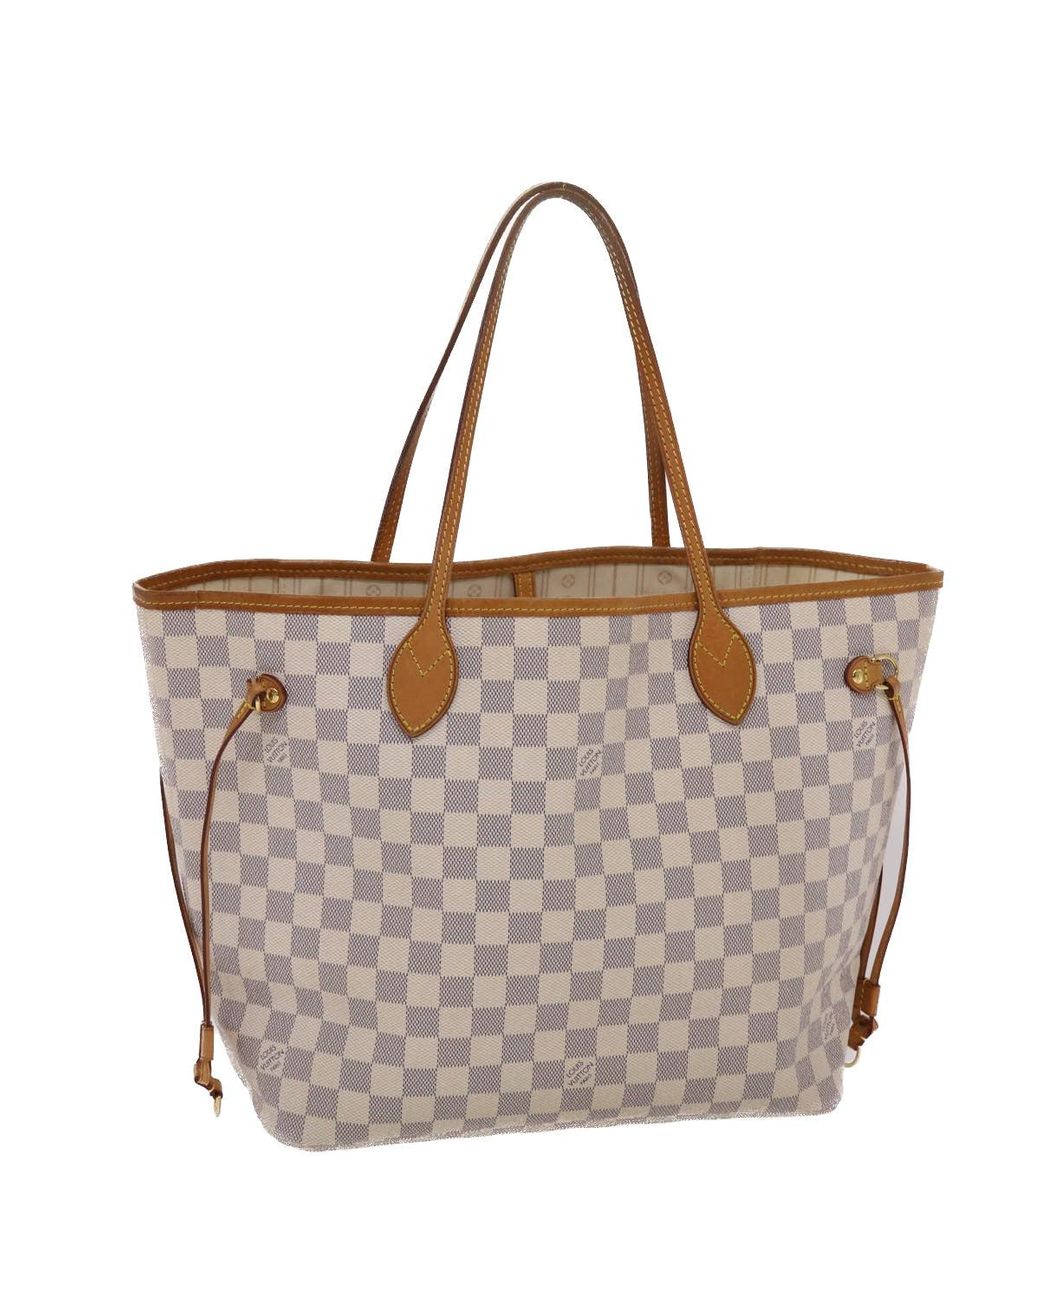 Pre-owned Louis Vuitton Never Full Handbag